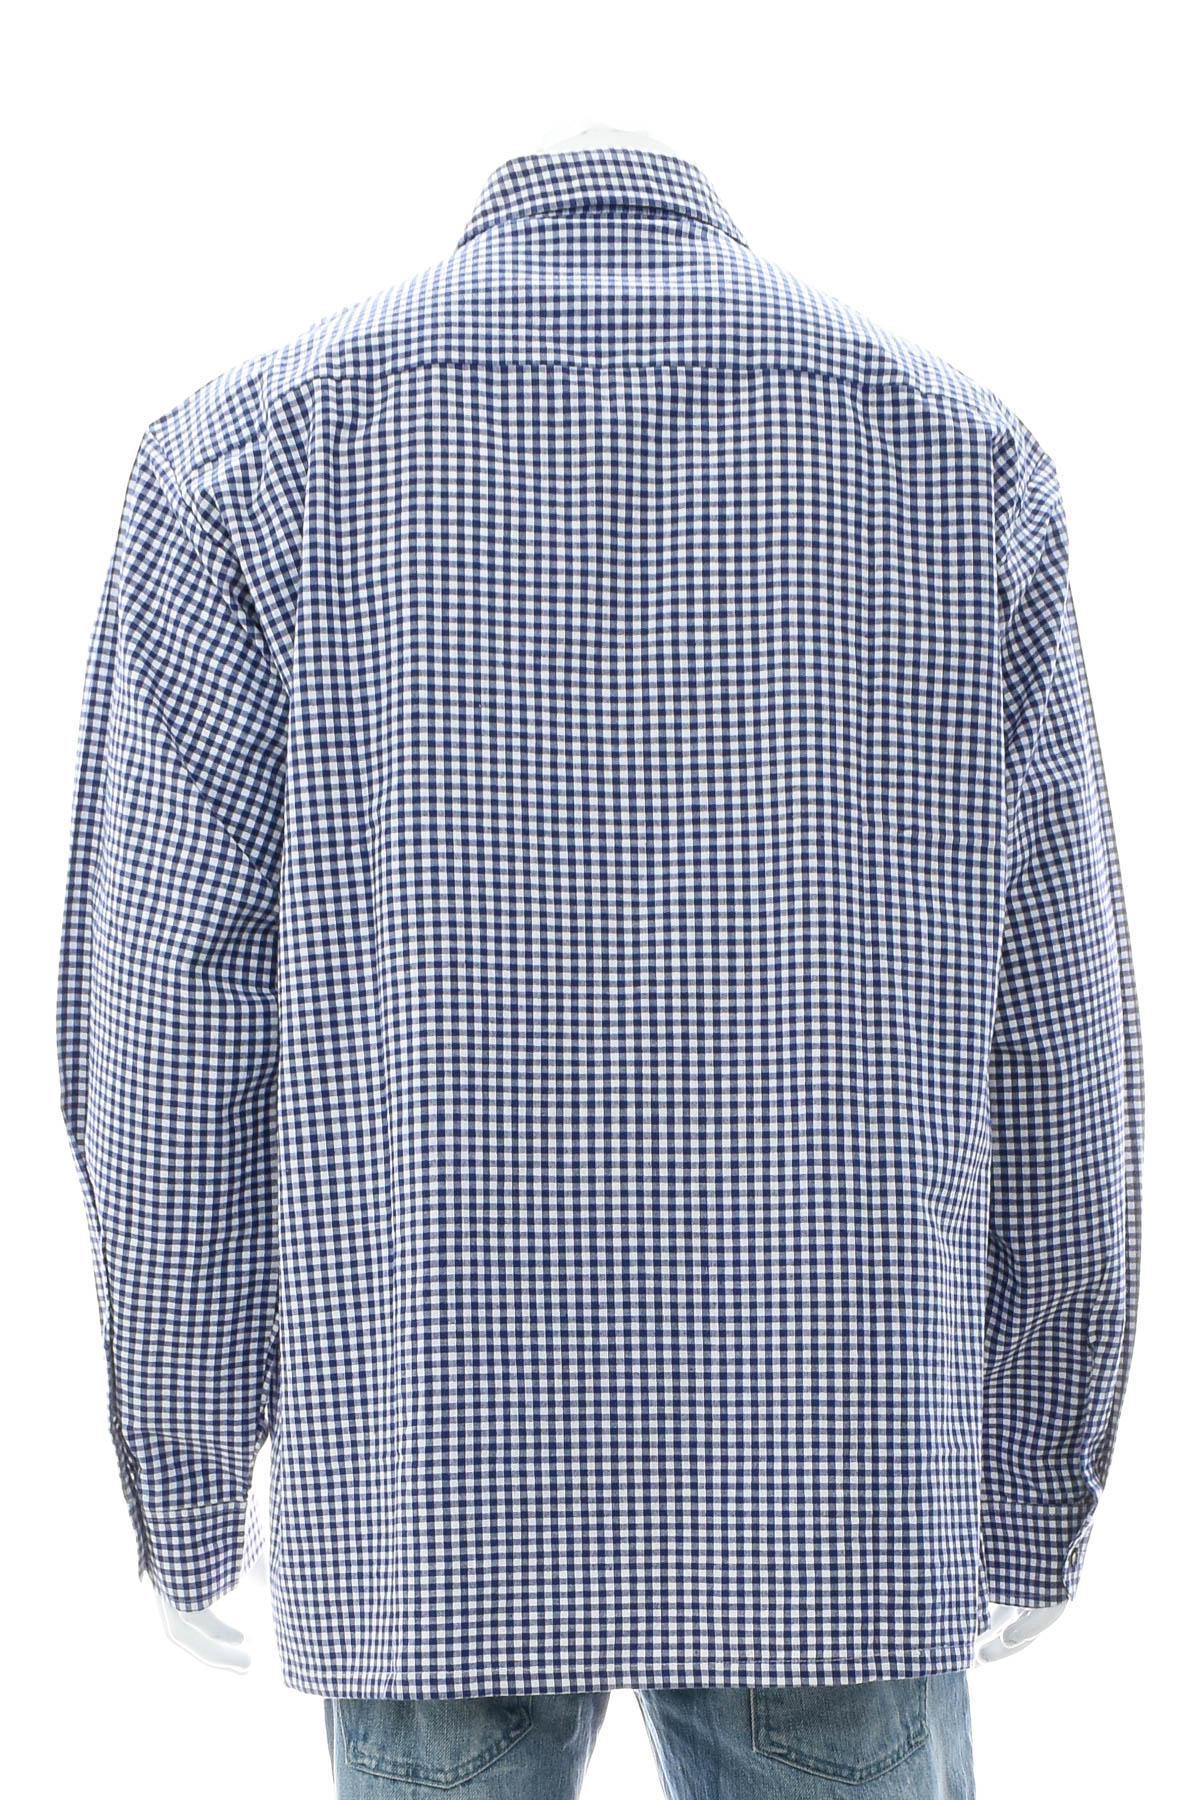 Ανδρικό πουκάμισο - Usar-Grachten - 1